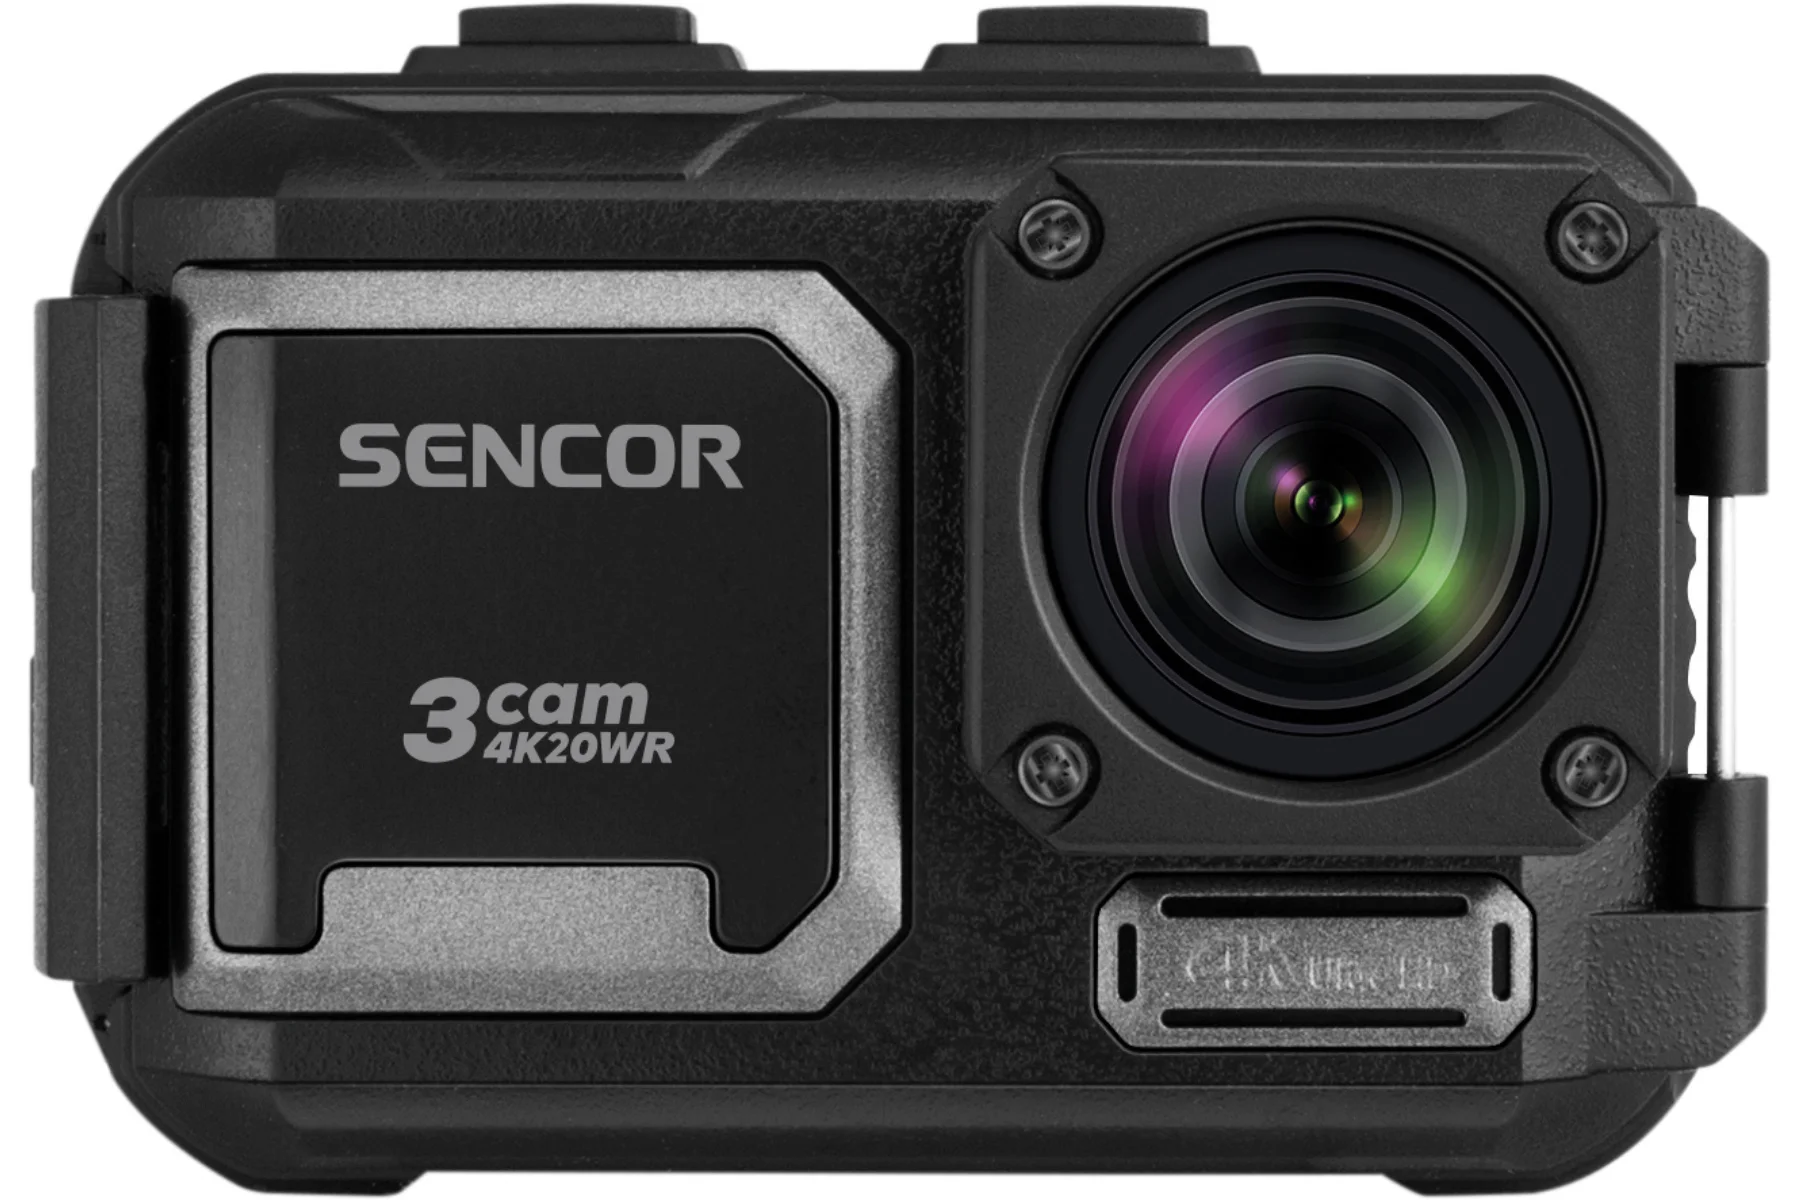 Outdoorová kamera Sencor 3CAM 4K20WR akcna